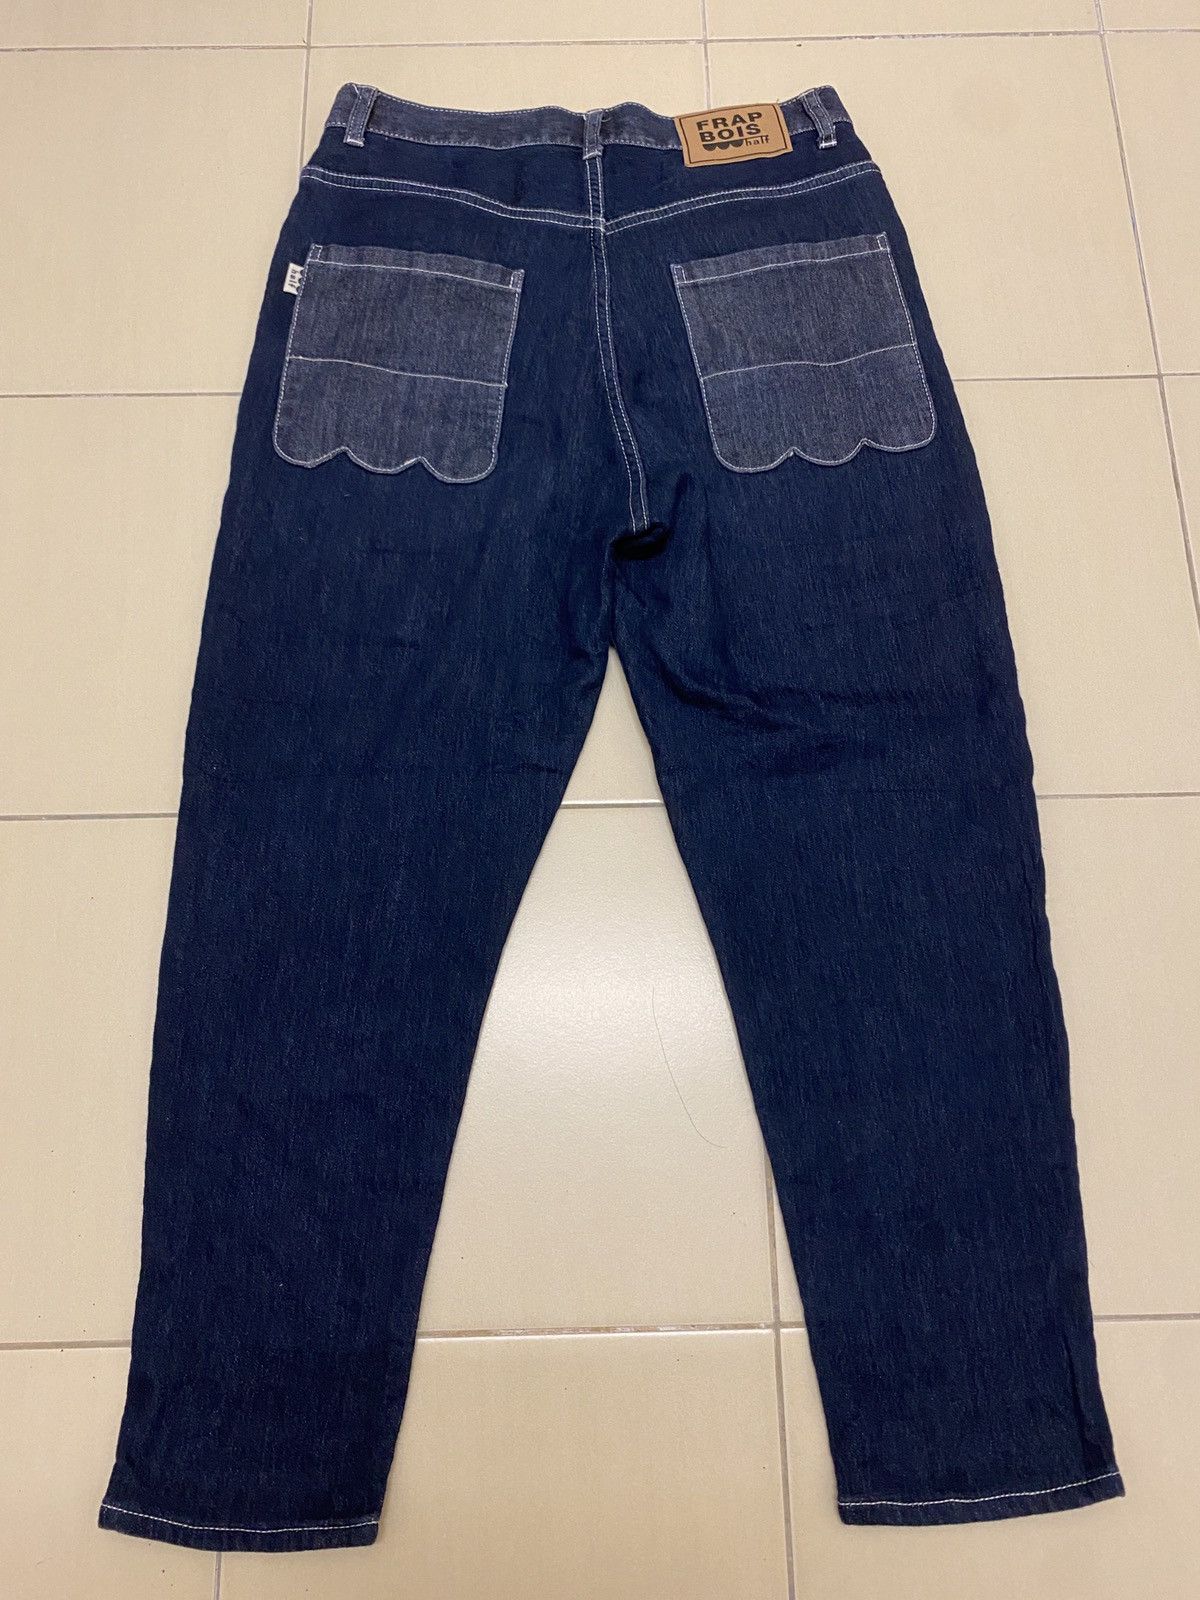 Frapbois half woman soft jeans - 1